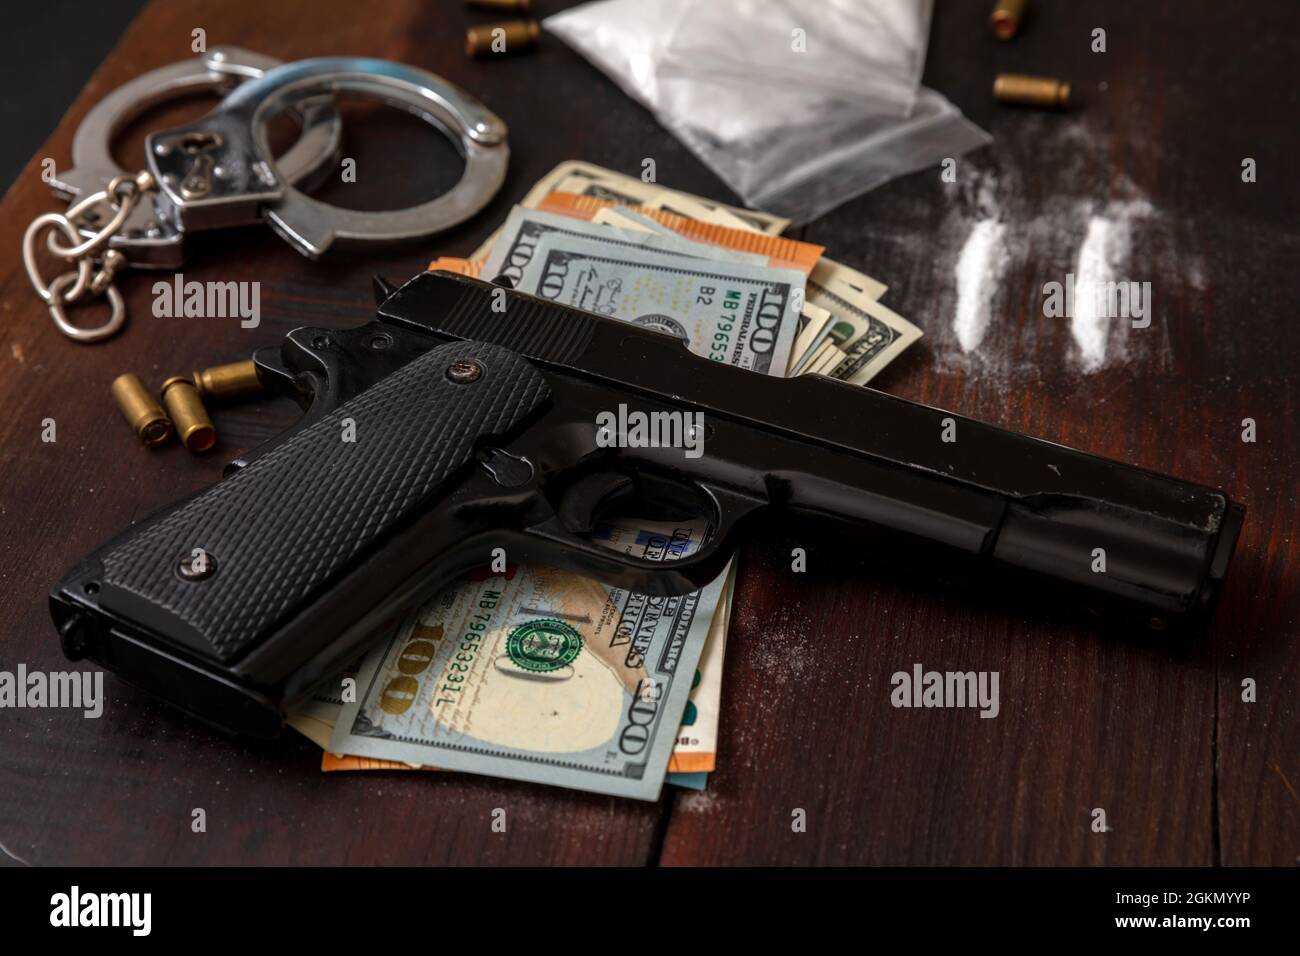 Drogenschmuggel und -Handel, Handschellen, Pistolengeld und Kokainpakete auf Holztischhintergrund. Handel mit illegalen Substanzen und Verhaftung Stockfoto